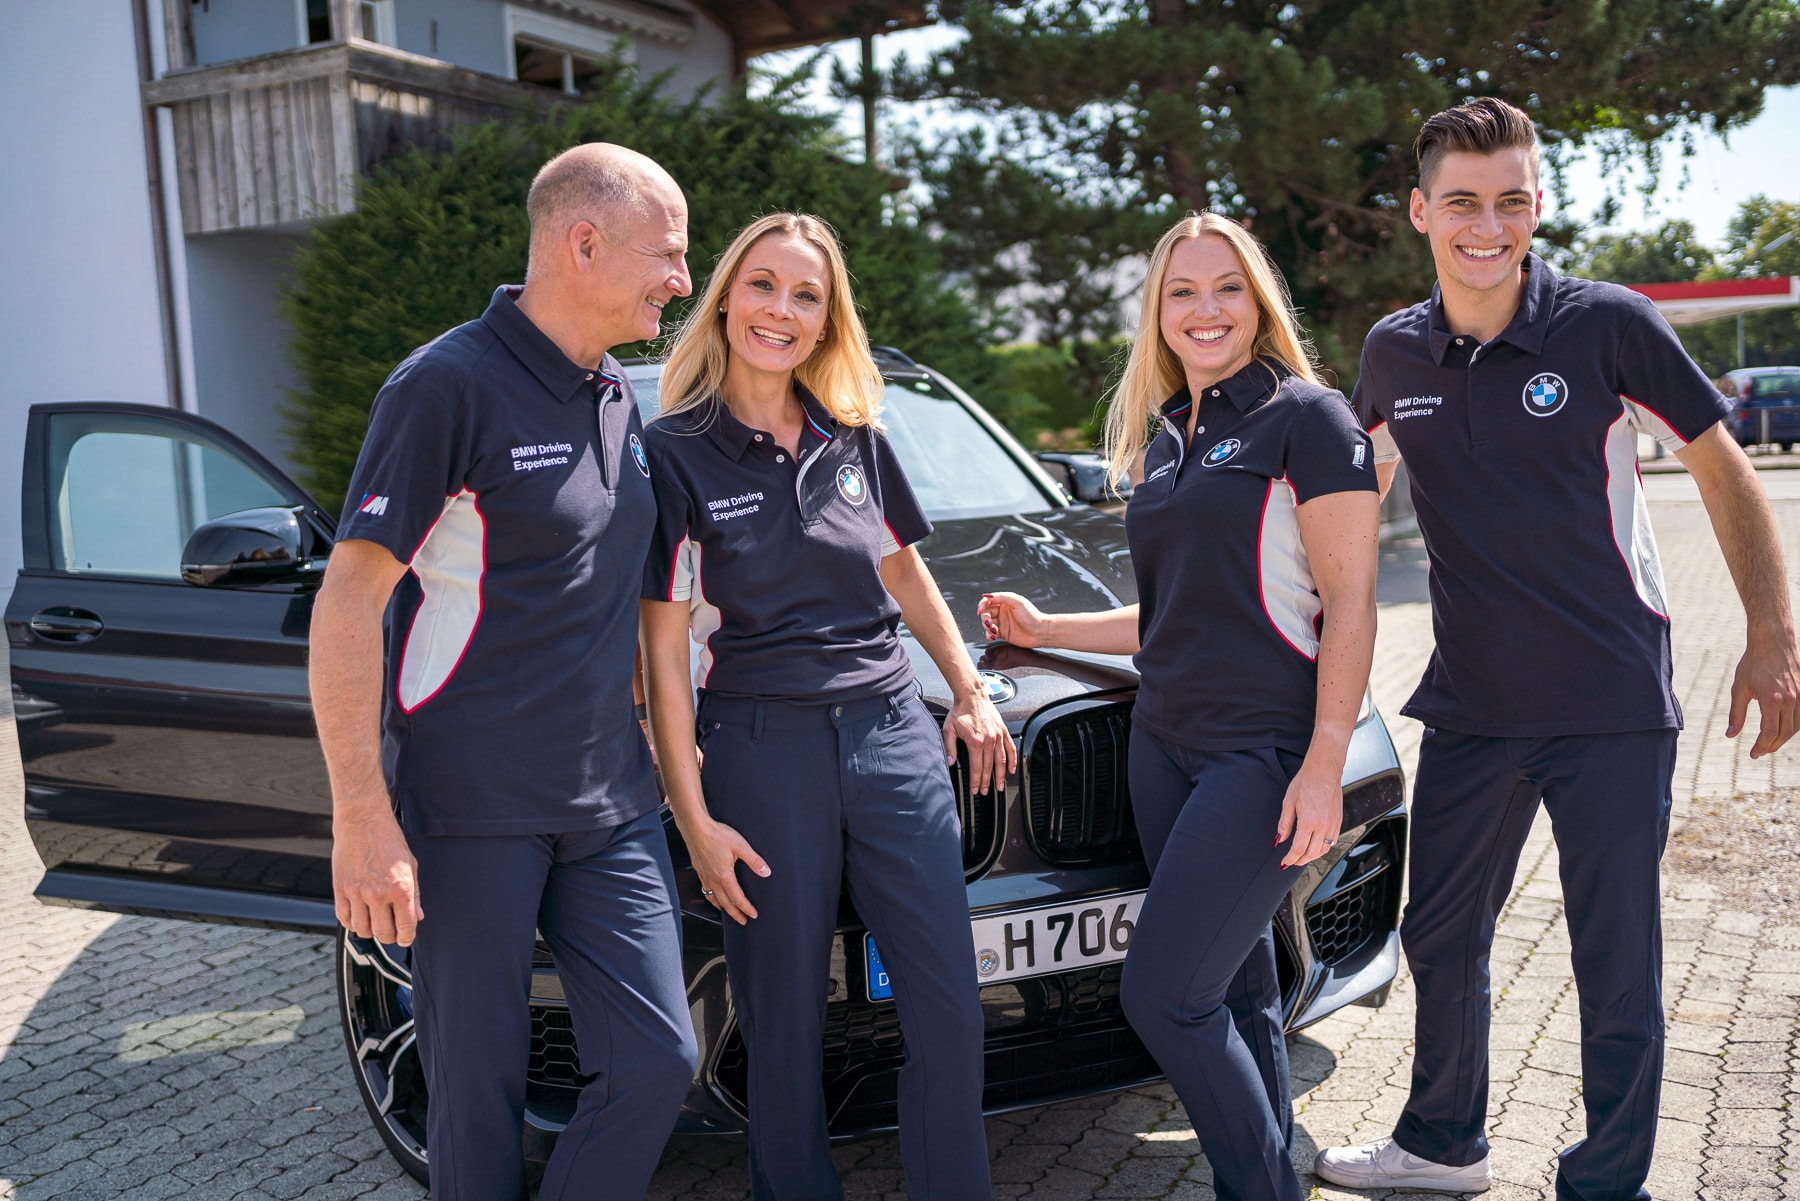 BMW Driving Experience Team im Corporate Fashion Outfit mit Logo Stick auf der Brust